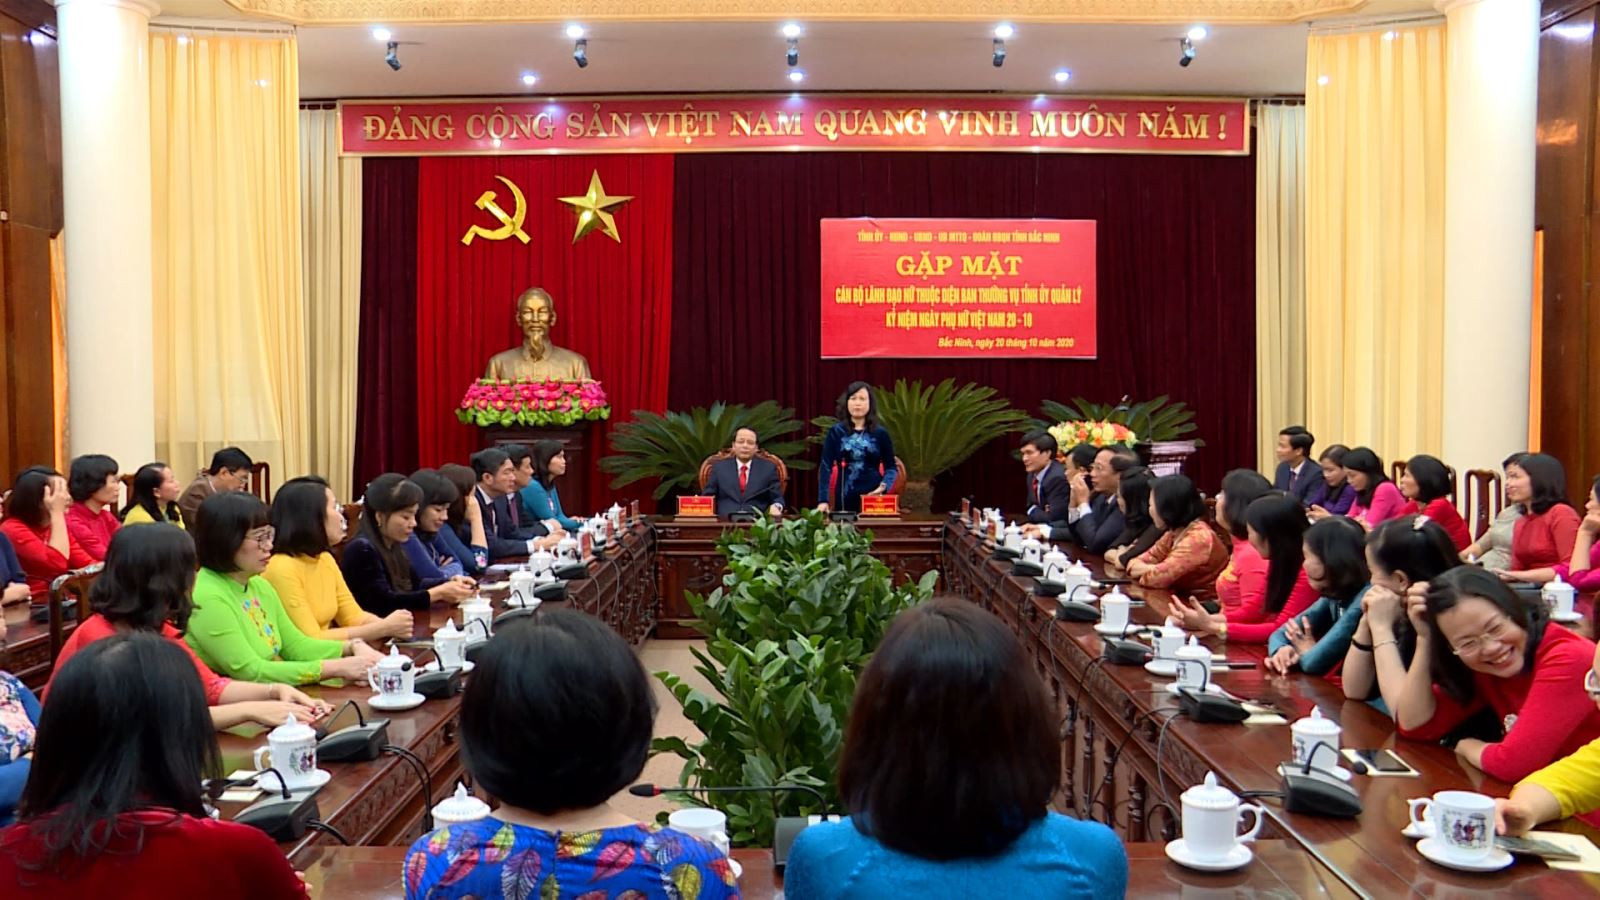 Đưa Nghị quyết Đại hội Đảng XIII vào cuộc sống:  Bắc Ninh tạo điều kiện cho cán bộ nữ phát triển - Ảnh 1.